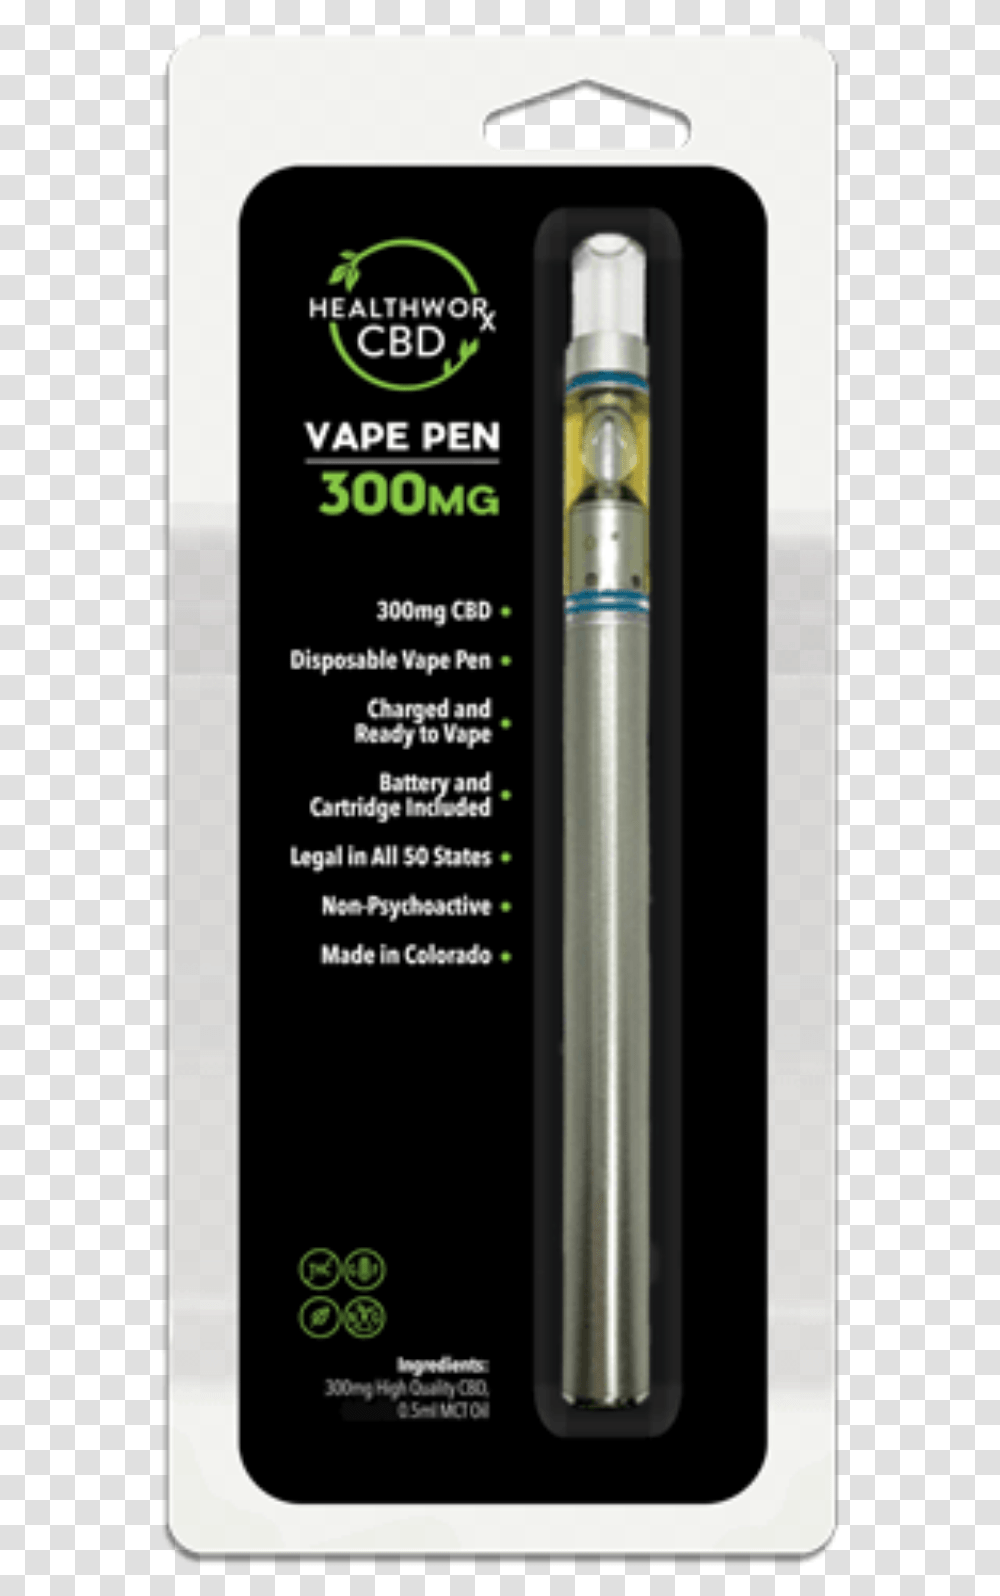 Cbd Disposable Vape Pen By Healthworxcbd, Machine, People, Weapon, Pump Transparent Png